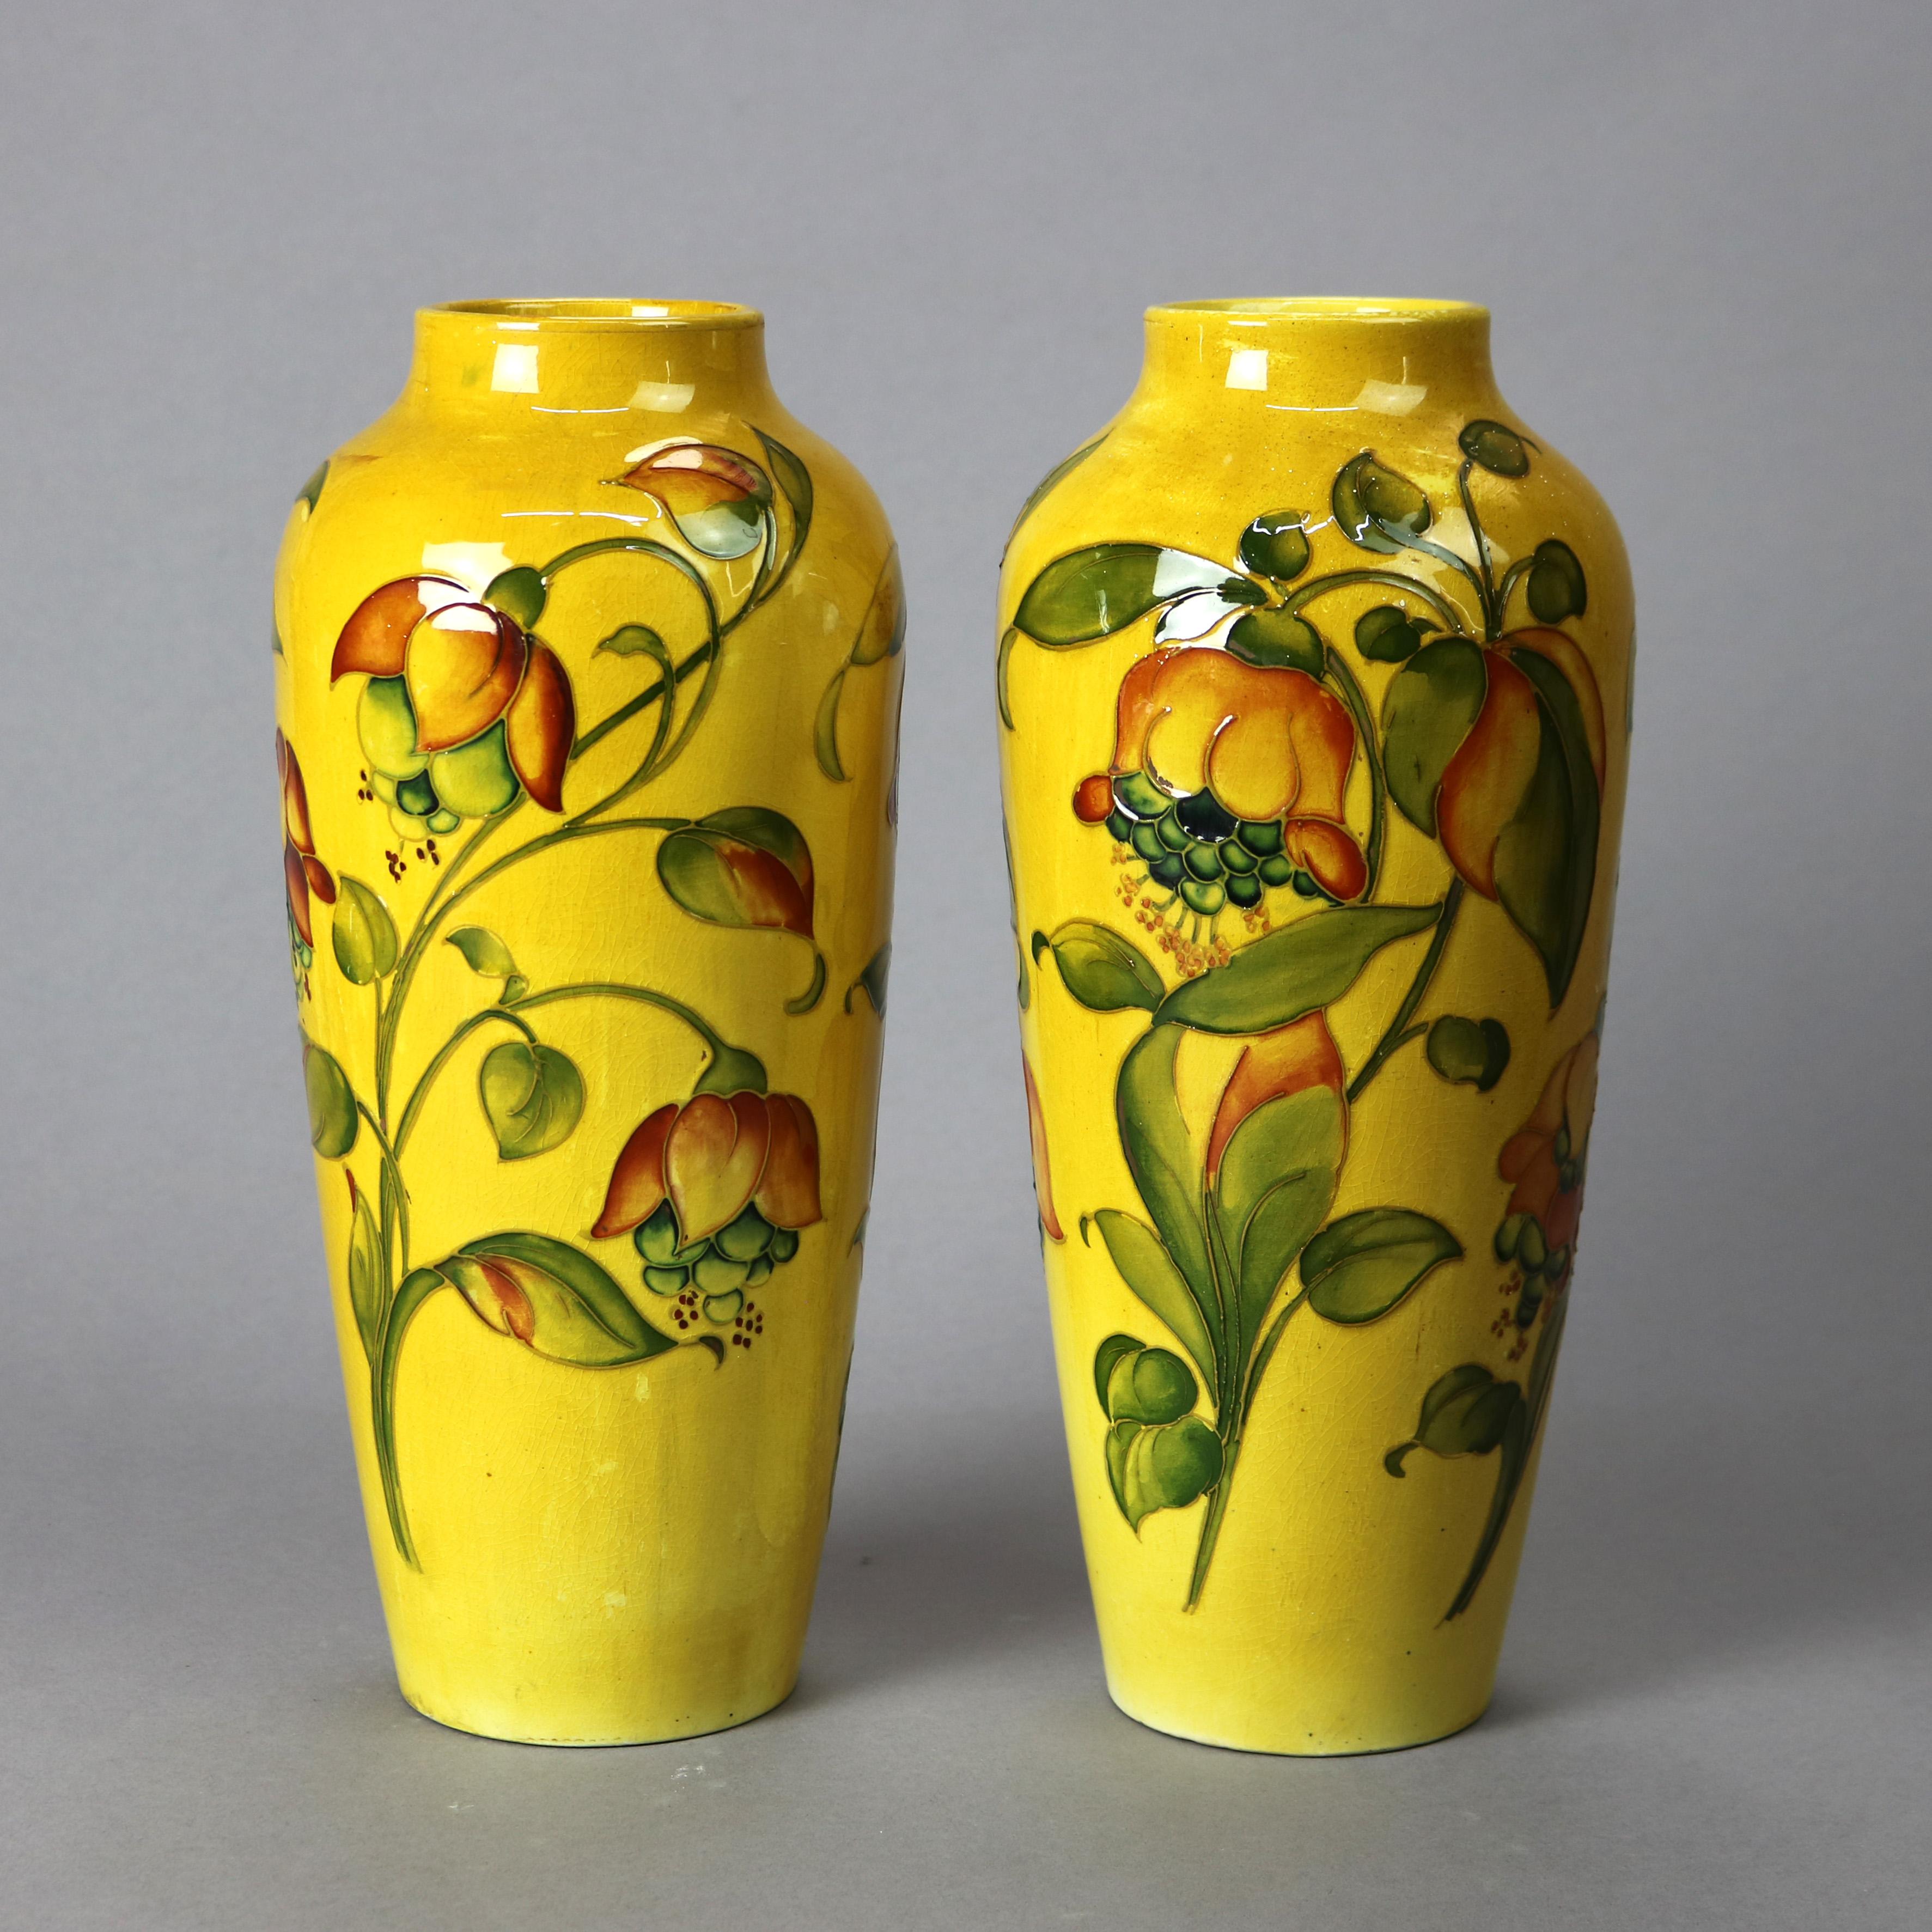 Paire de vases anciens Arts and Crafts par Moorcroft, construction en poterie d'art avec motif floral peint à la main, marque de fabricant telle que photographiée, trous percés dans les bases, c1910

Mesure 12 